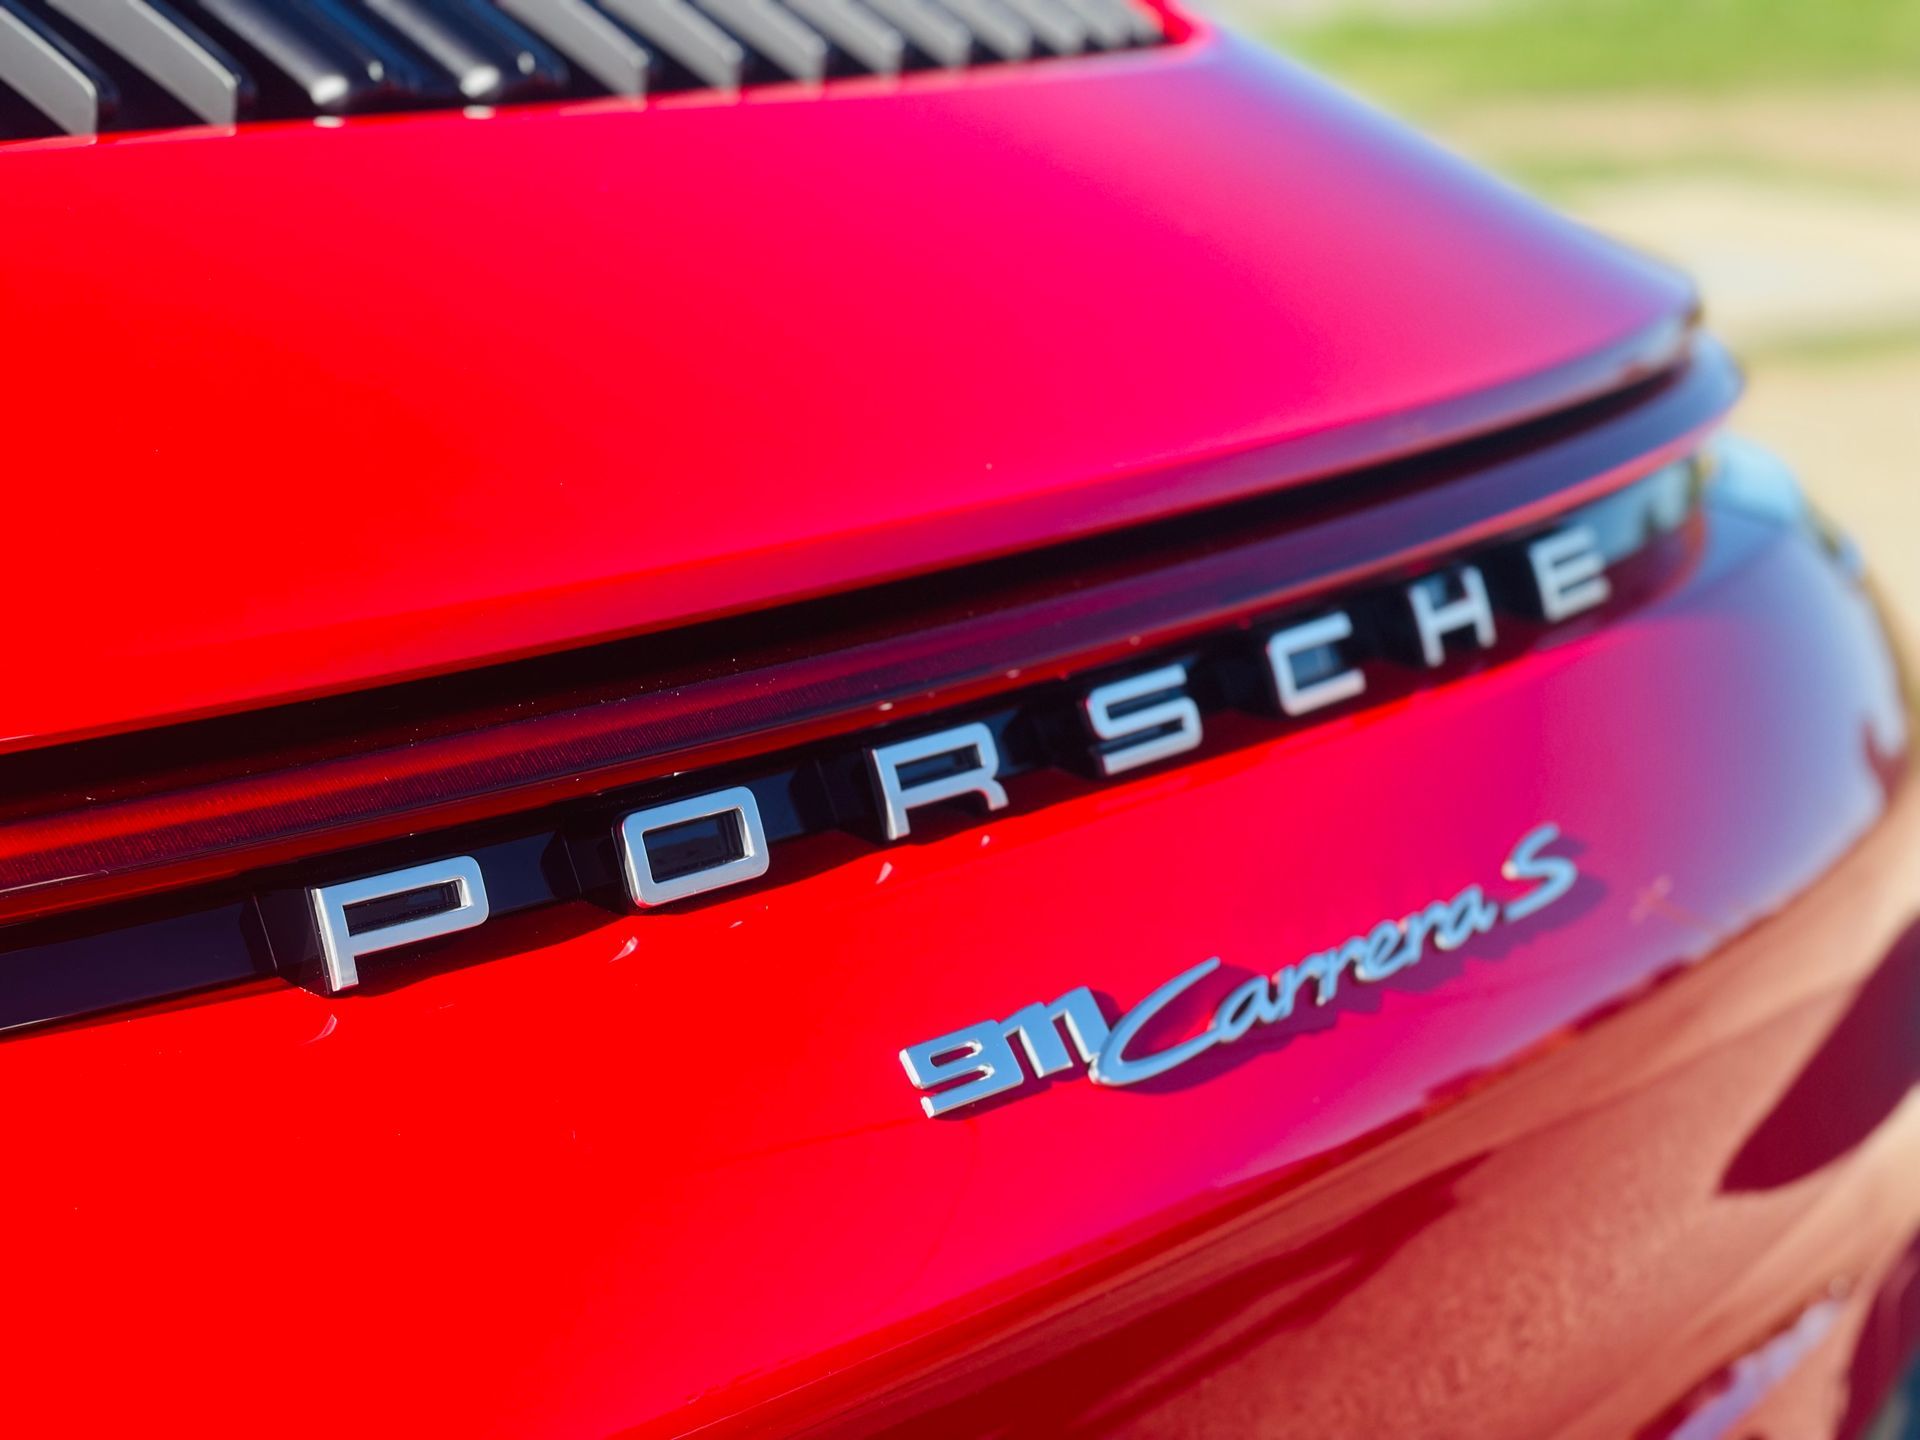 The Badge of a Porsche